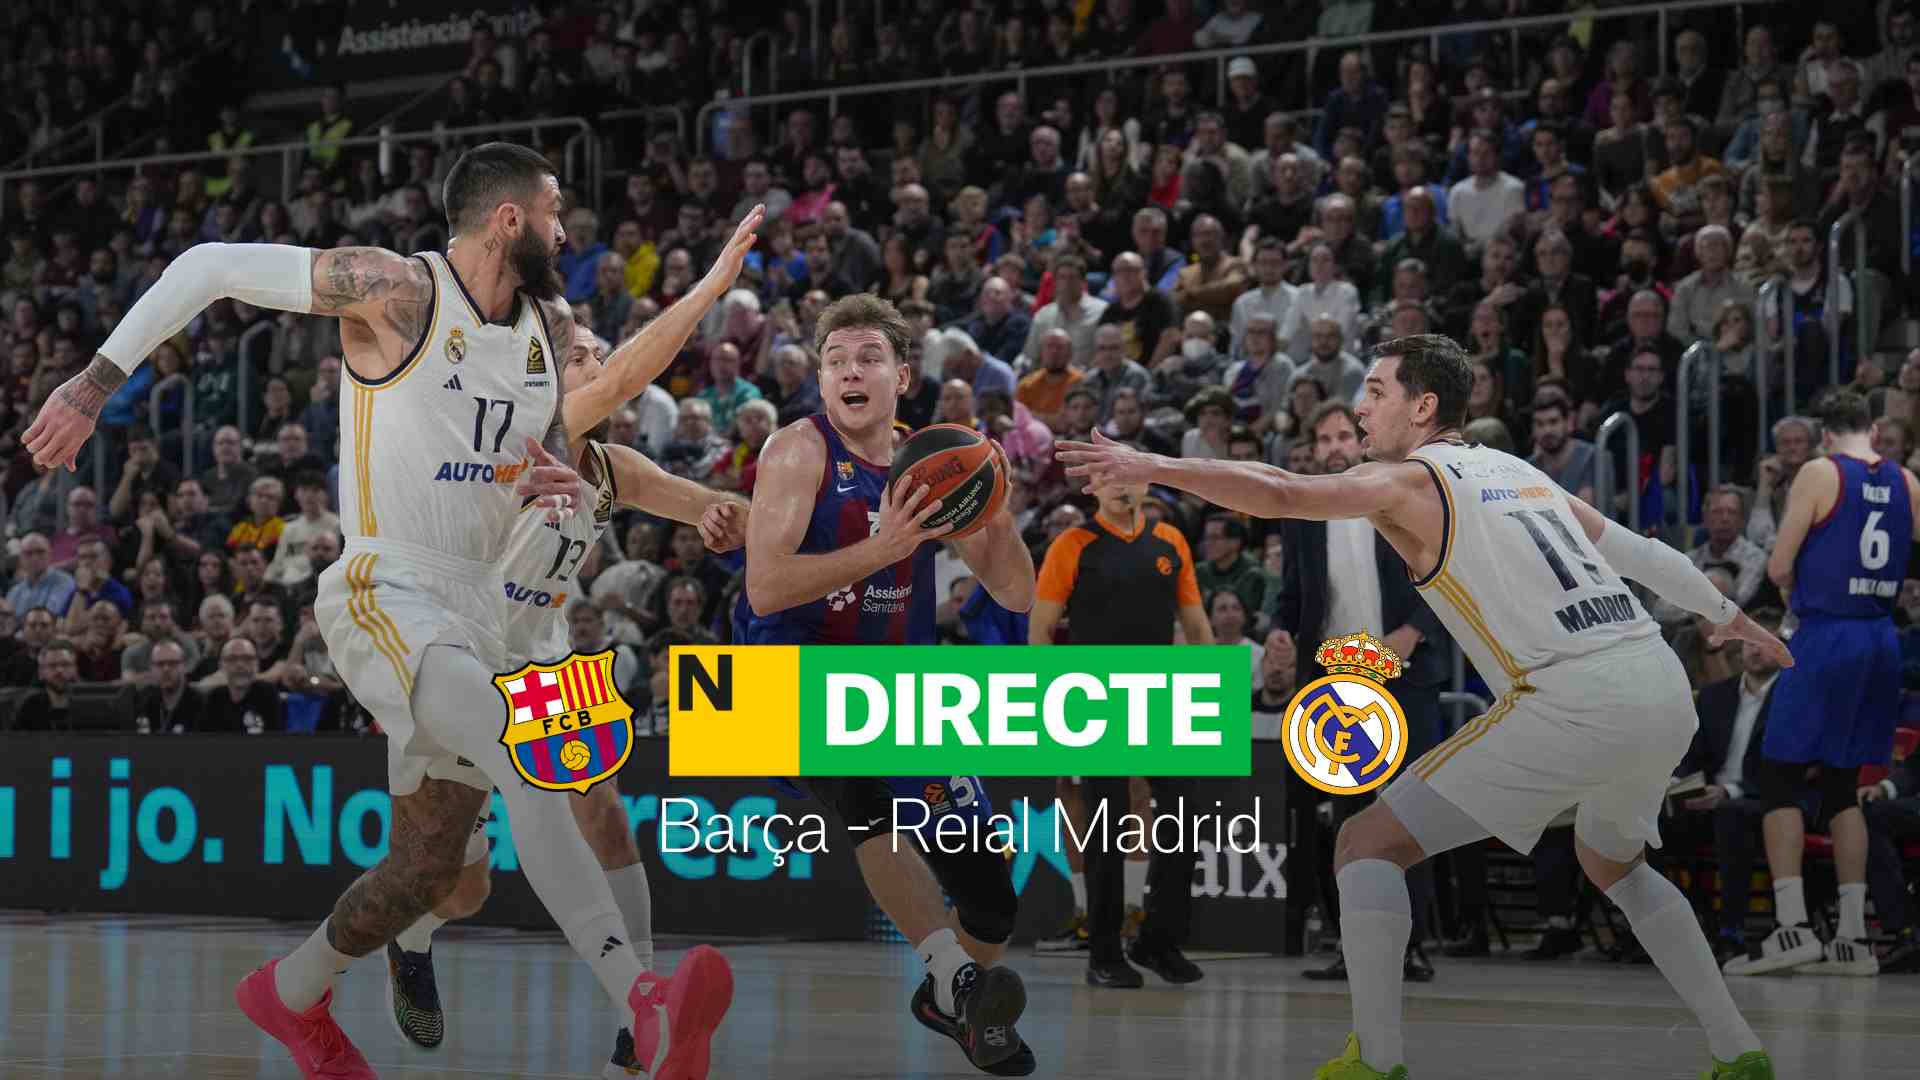 Barça - Real Madrid de la Liga Endesa, DIRECTO |Resultado y resumen